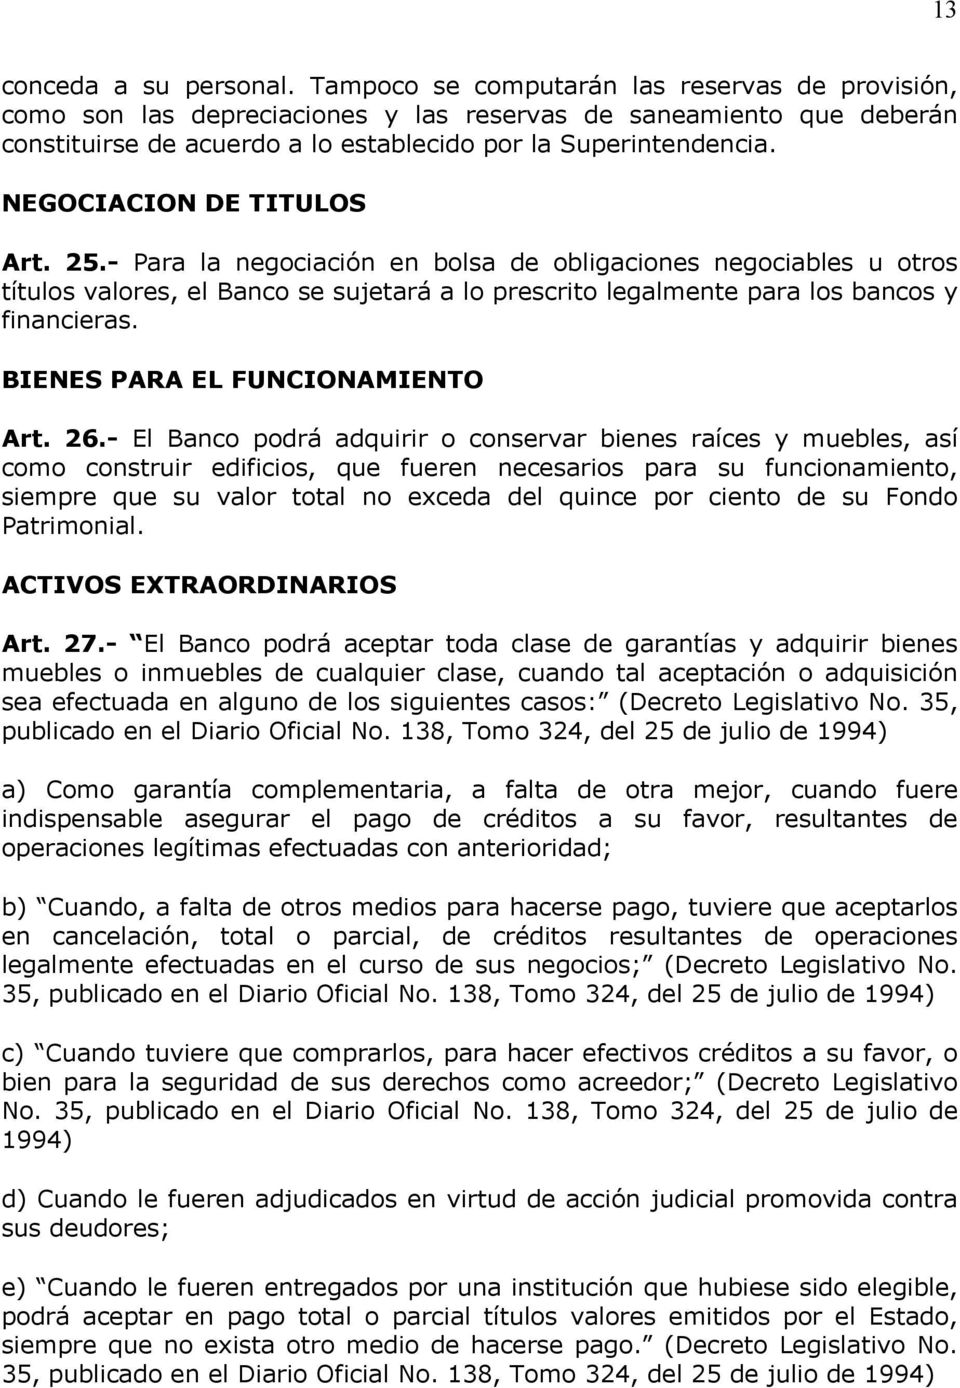 NEGOCIACION DE TITULOS Art. 25.- Para la negociación en bolsa de obligaciones negociables u otros títulos valores, el Banco se sujetará a lo prescrito legalmente para los bancos y financieras.